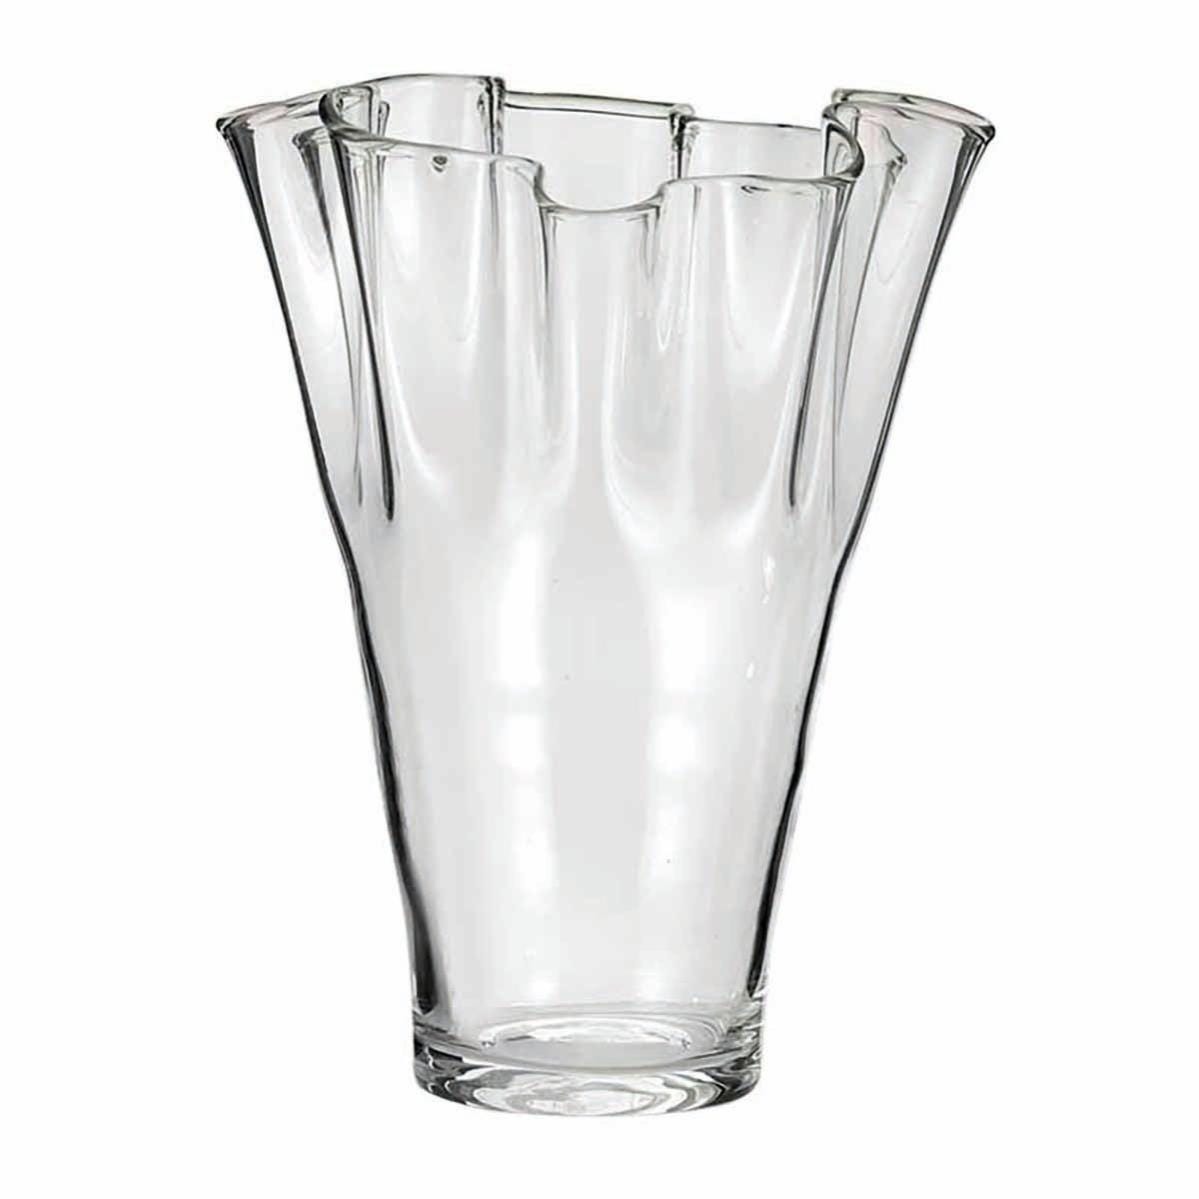 7 idee originali per riempire un vaso di vetro, Leroy Merlin